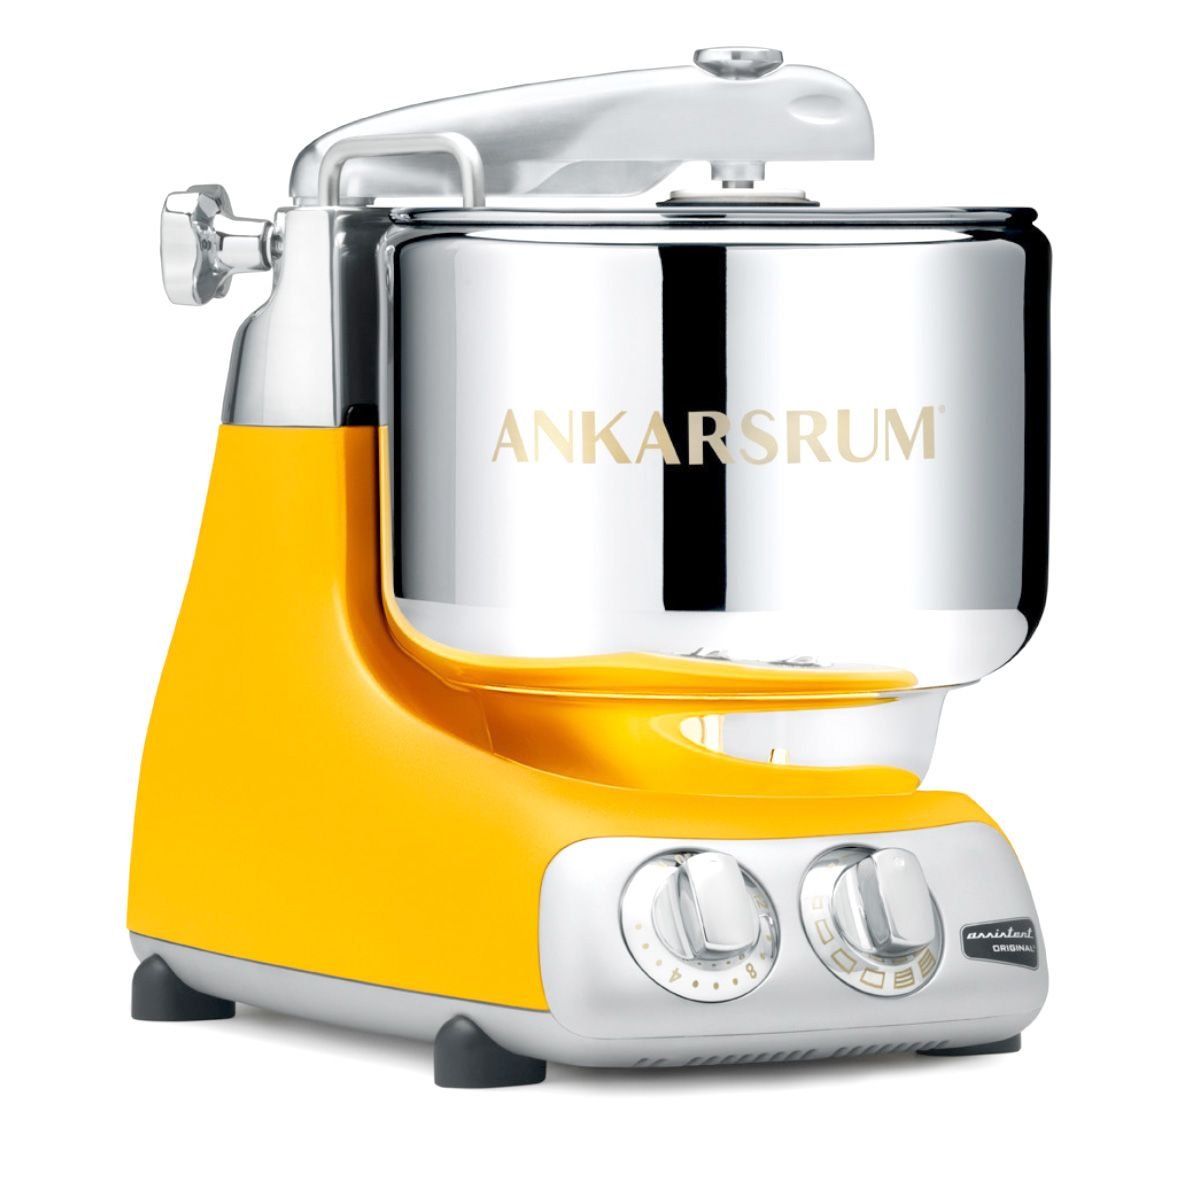 Ankarsrum Stand Mixer - Sunbeam Yellow